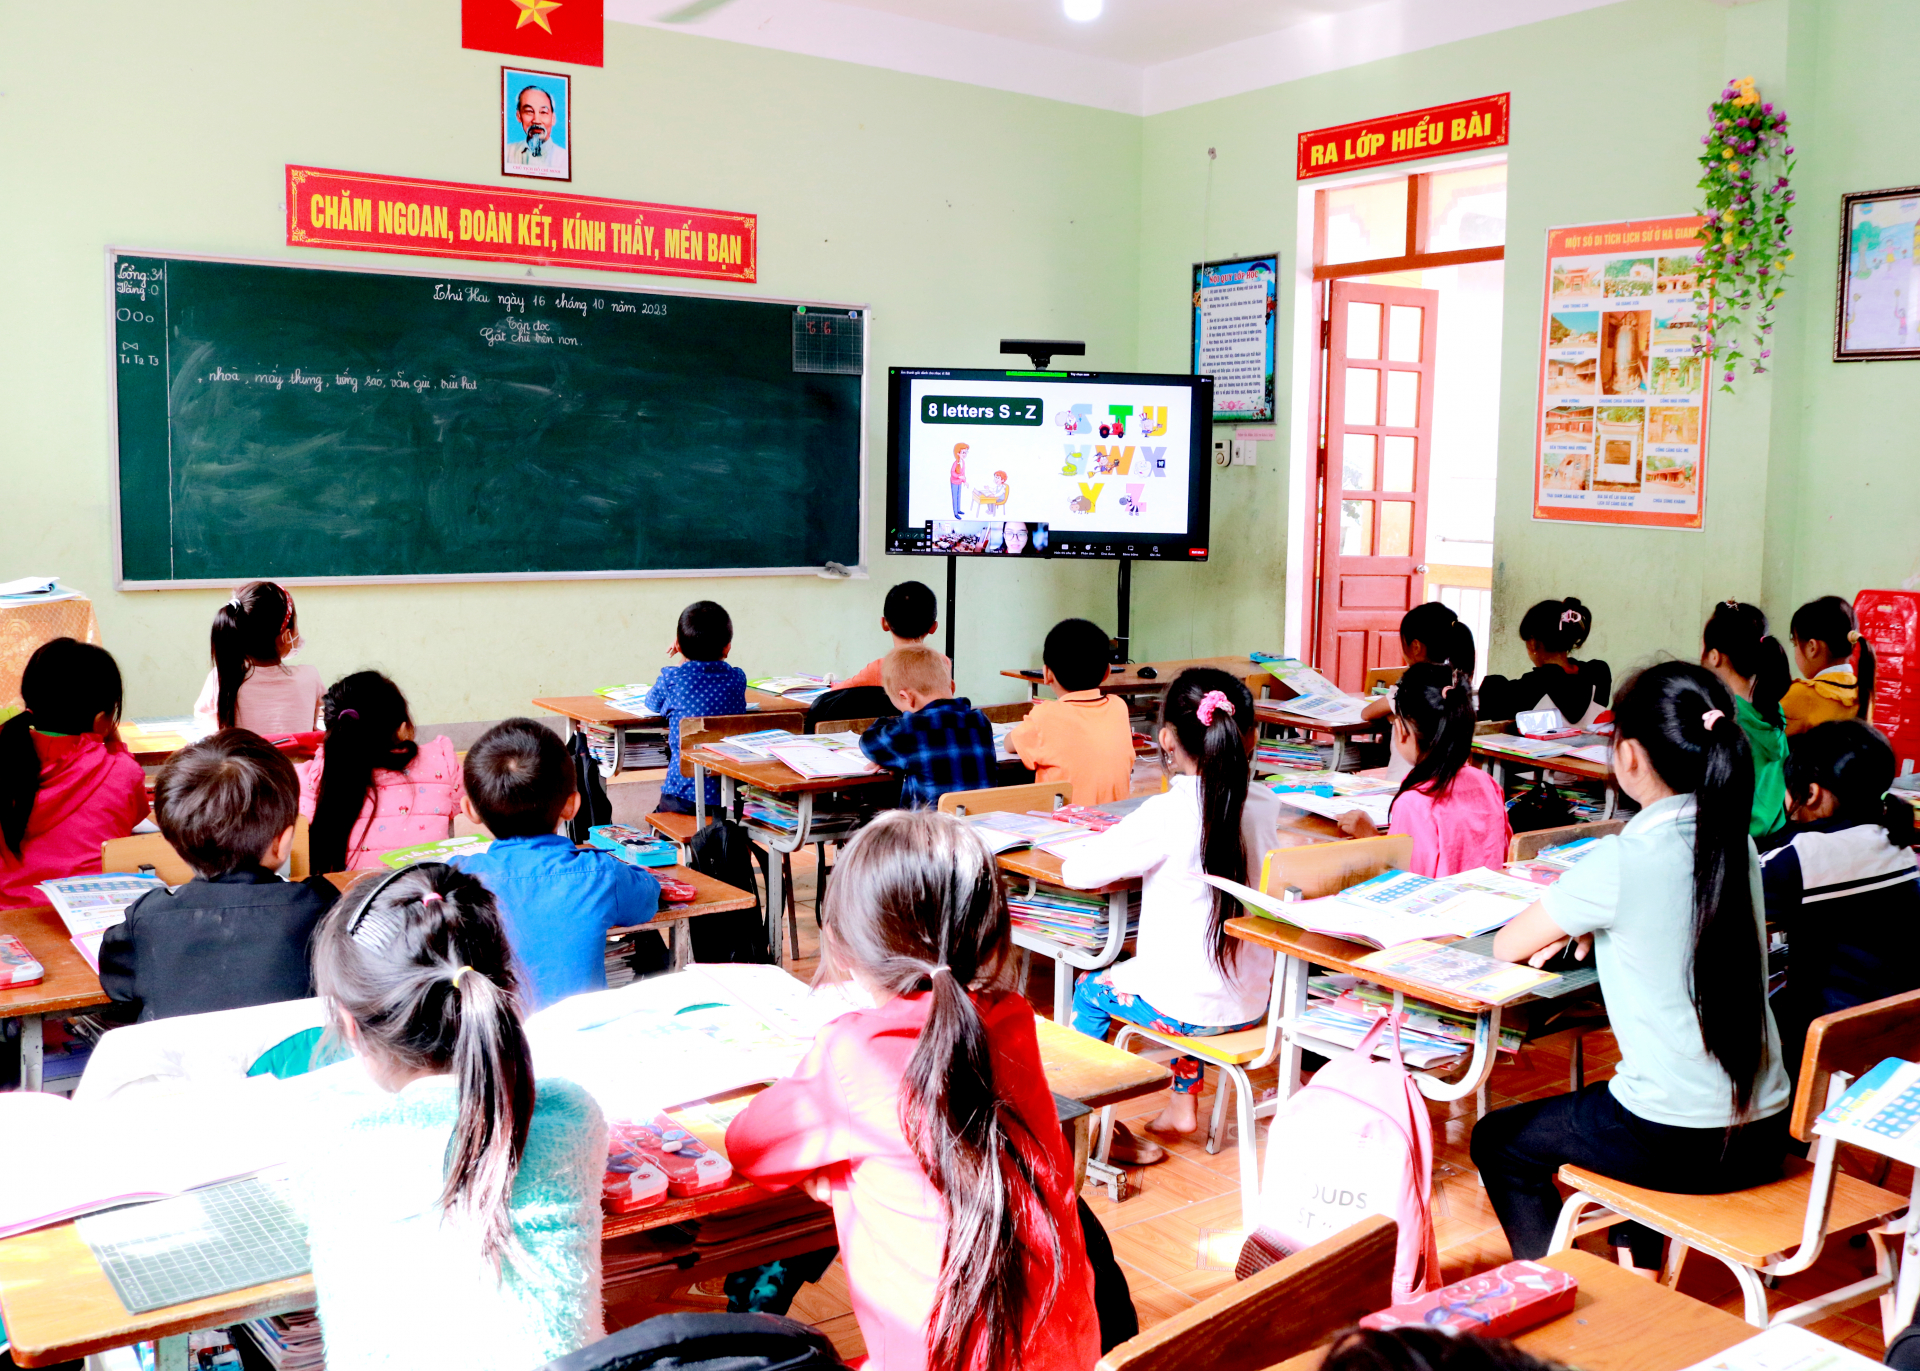 Tiết học trực tuyến của học sinh lớp 4A1 Trường phổ thông dân tộc bán trú Tiểu học Lũng Chinh do giáo viên Trường Marie Curie giảng dạy.